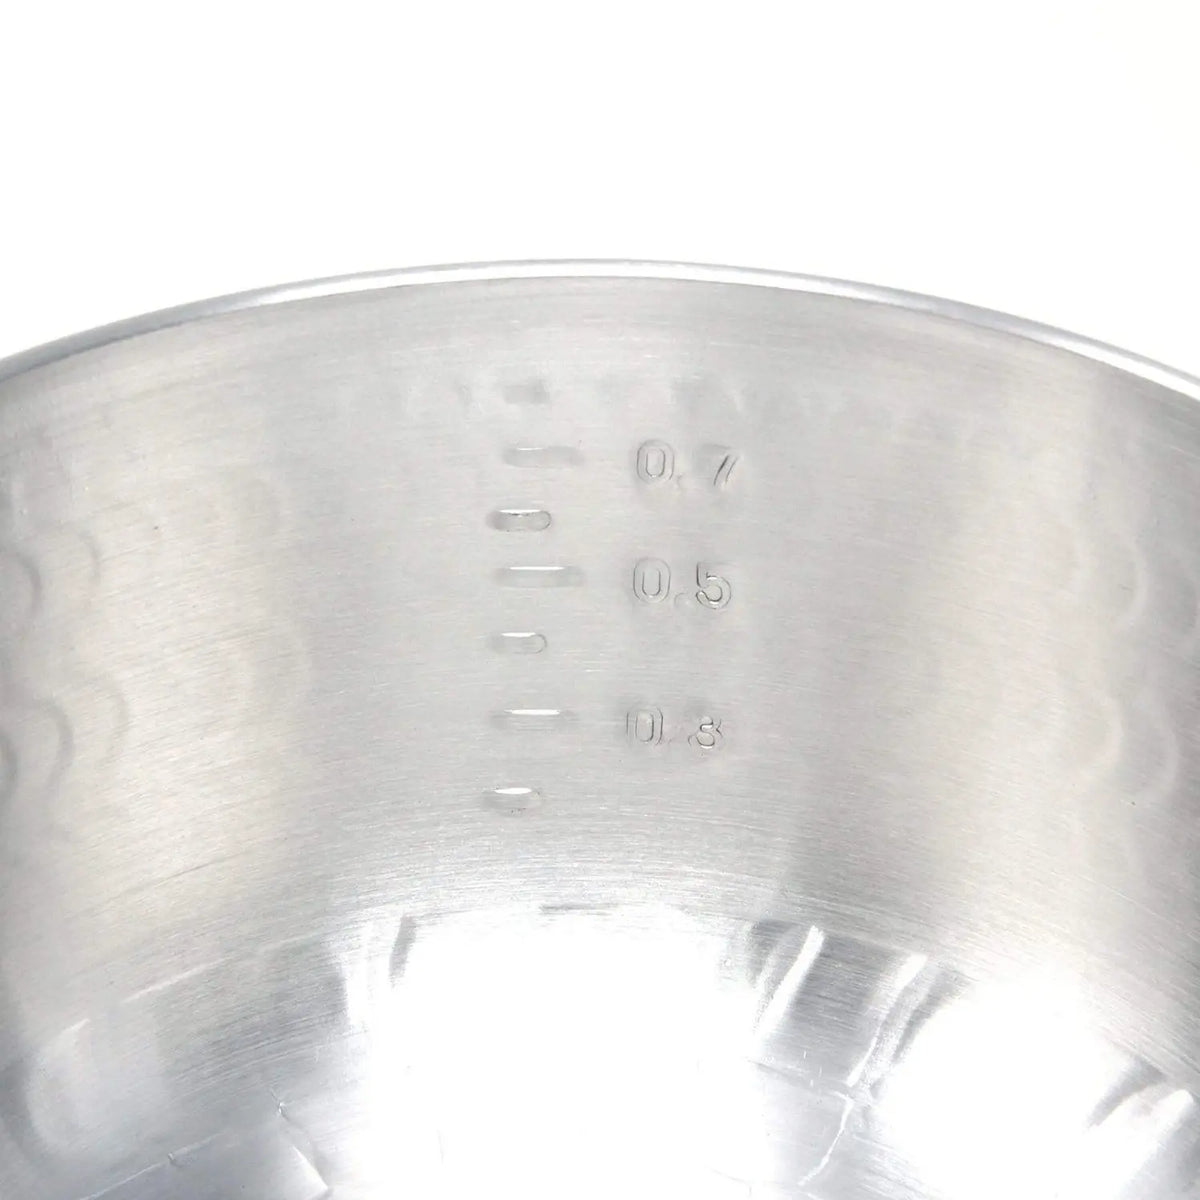 Shop AKAO Yukihira-nabe Aluminium Pan Pot & Pan - Save 10% Off